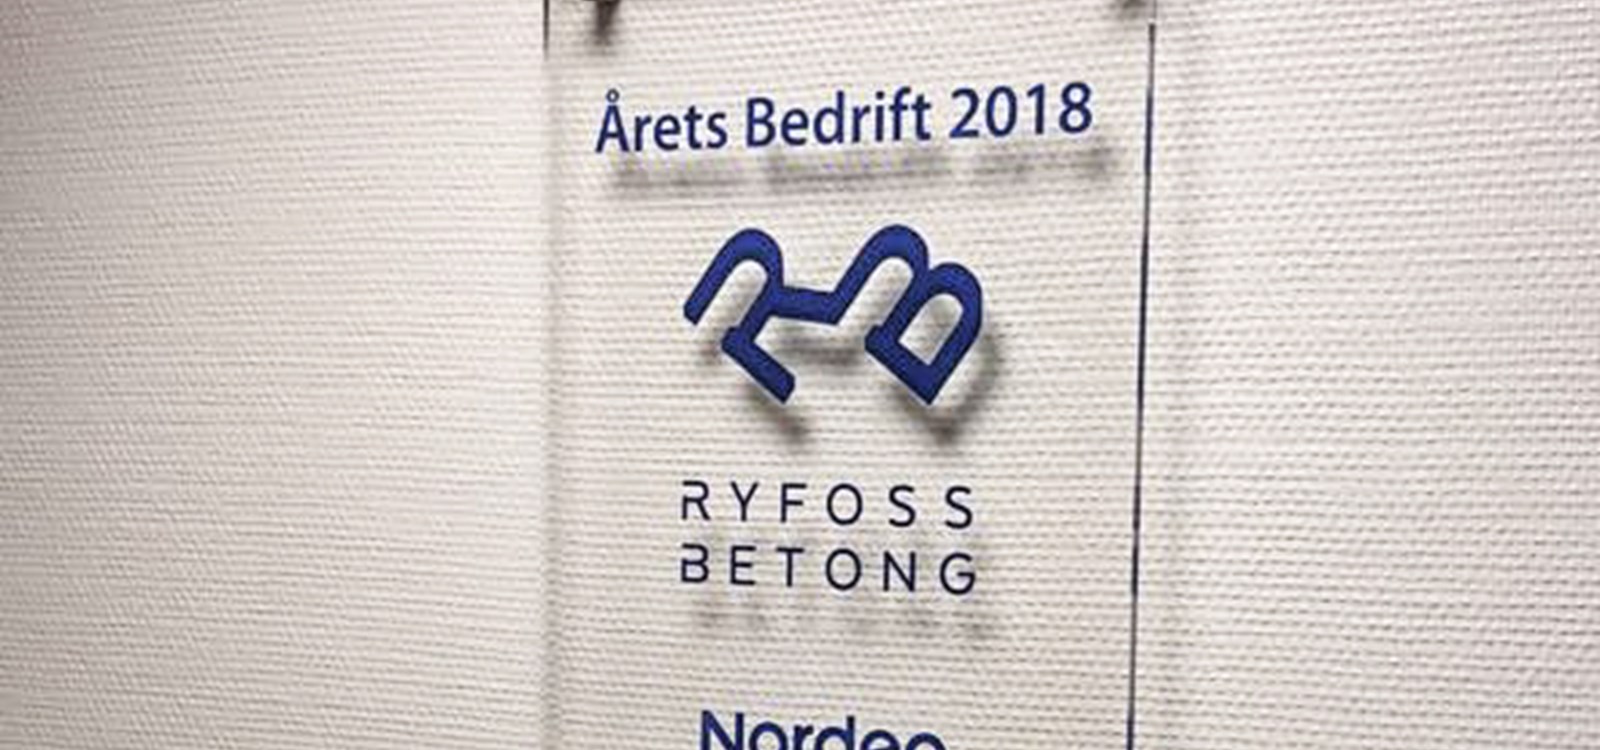 Det synlege beviset på at Ryfoss Betong AS er årets bedrift i Valdres heng no på kontorveggen .